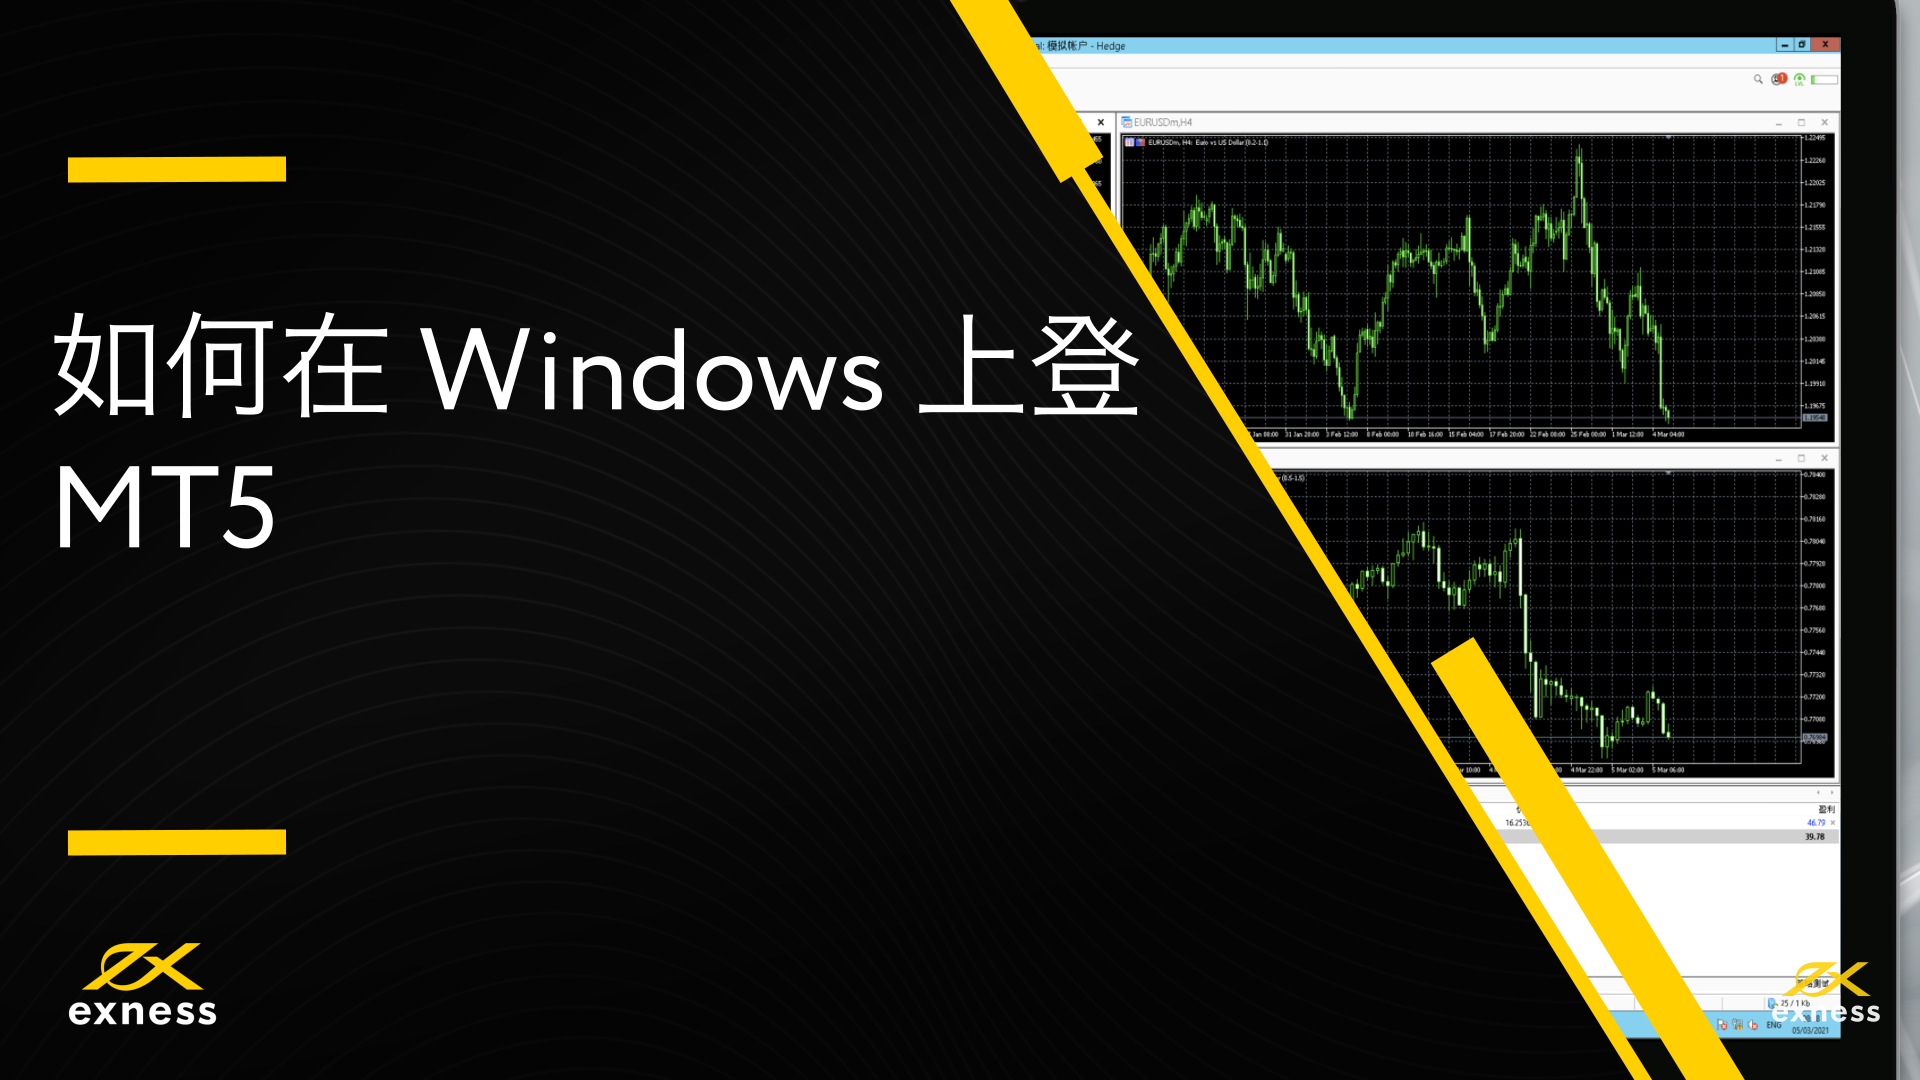 Windows MT5 使用指南 – Exness 帮助中心